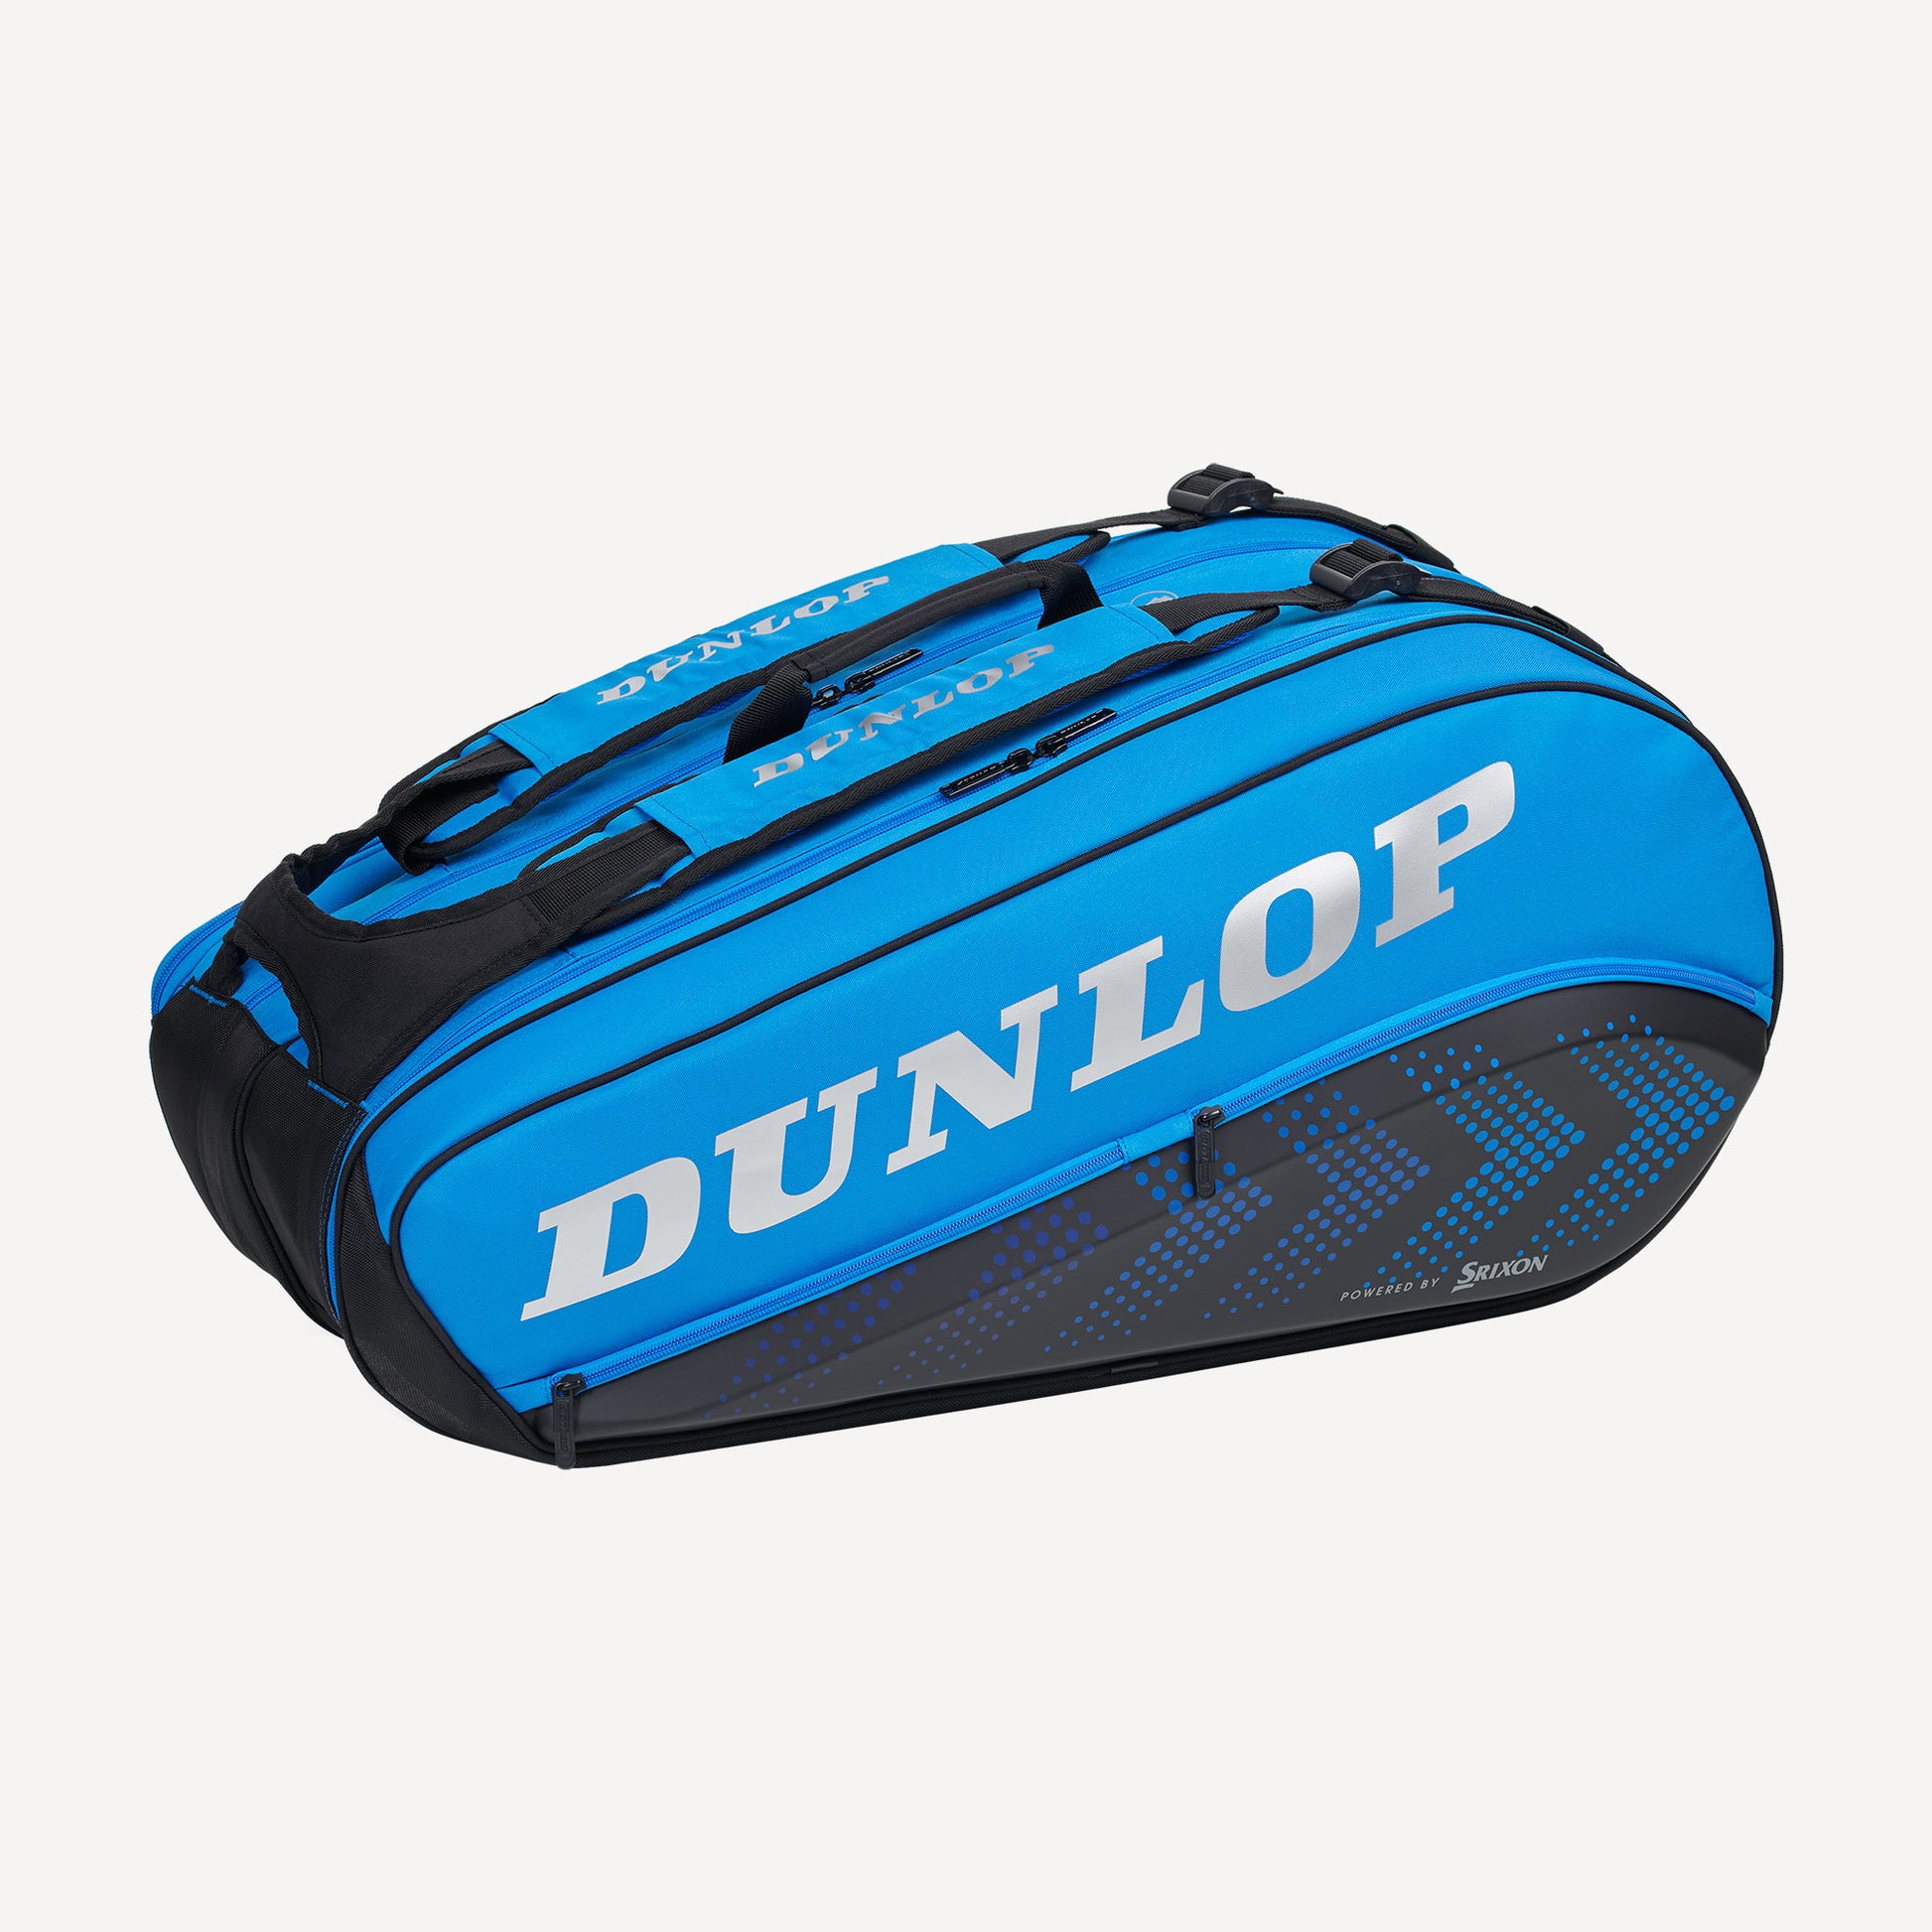 pack Cyberruimte beweeglijkheid Dunlop FX Performance 8R Thermo Tennistas Blauw - Tennis Only